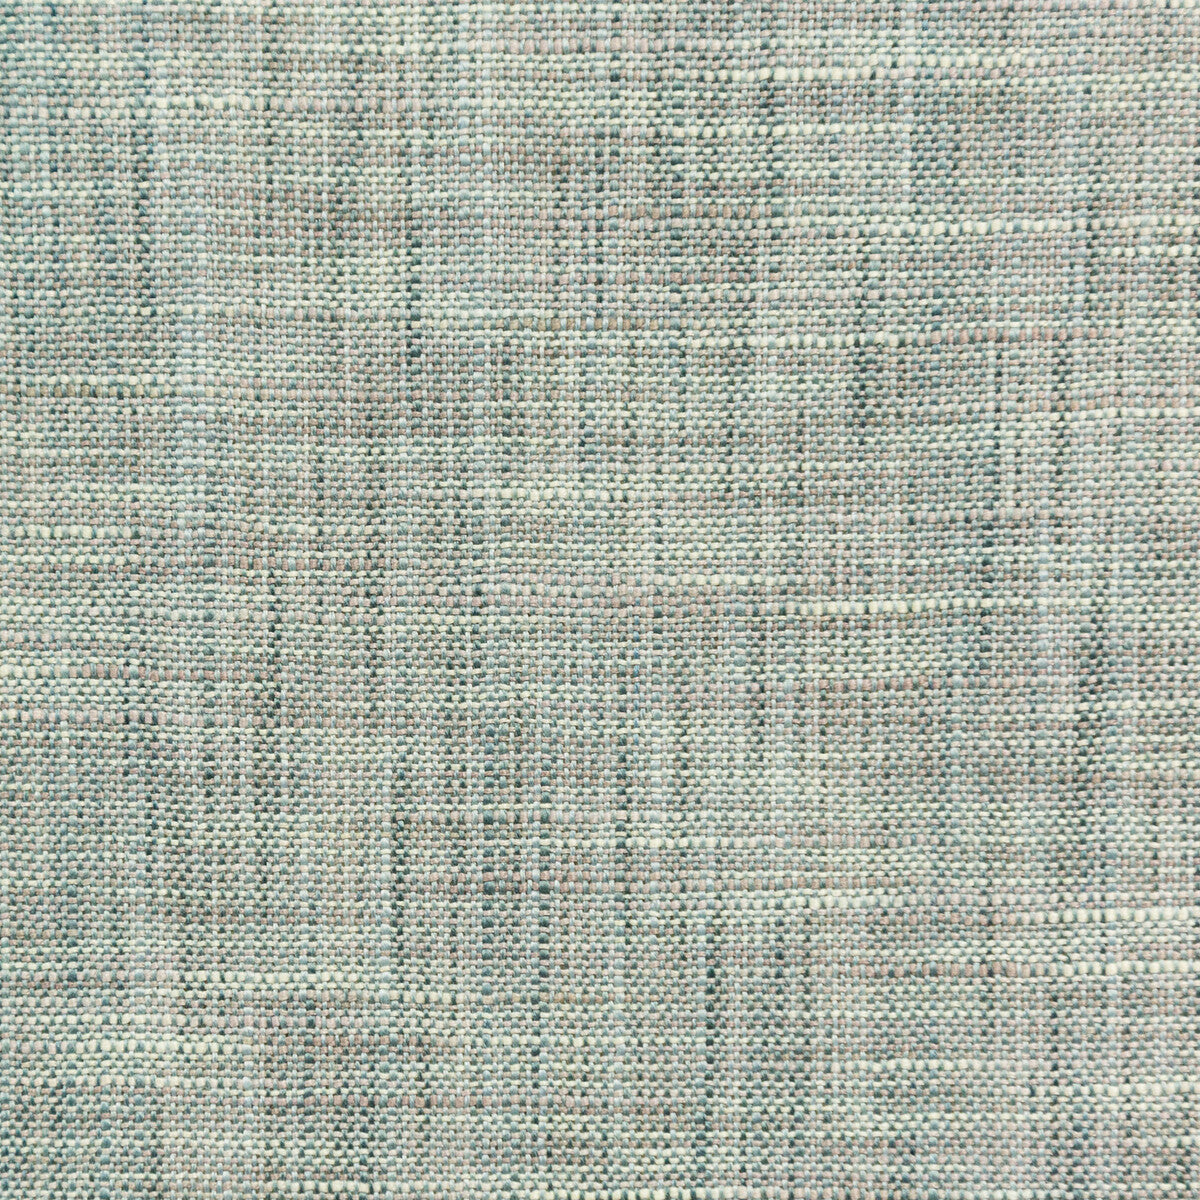 Kravet Basics fabric in 4668-135 color - pattern 4668.135.0 - by Kravet Basics